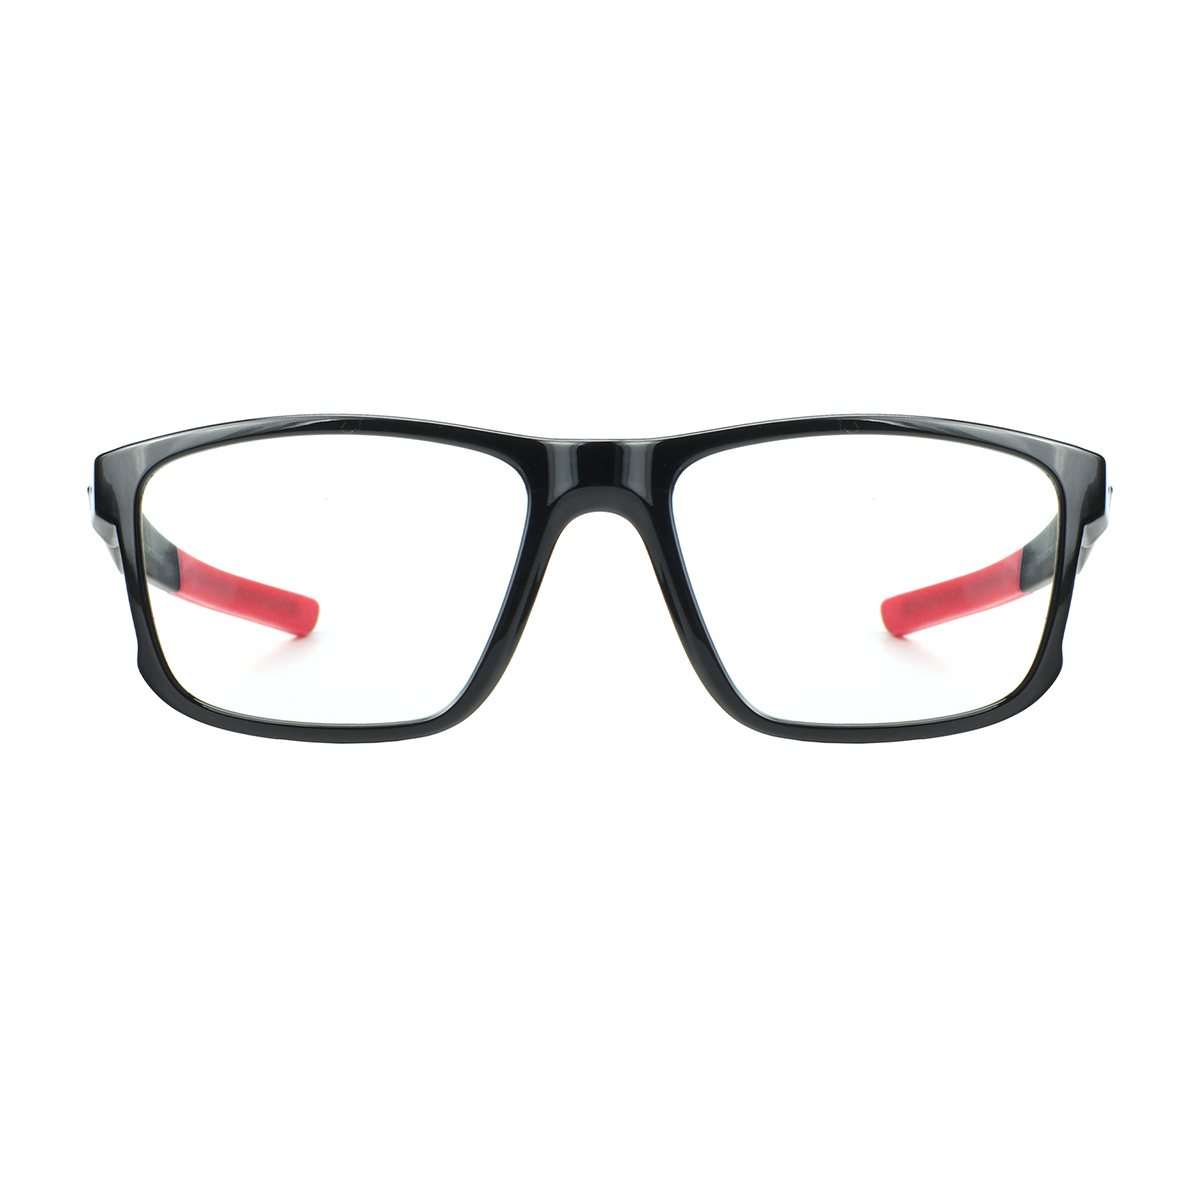 Darwin - Square Black-Gray Sports Glasses for Men - EFE